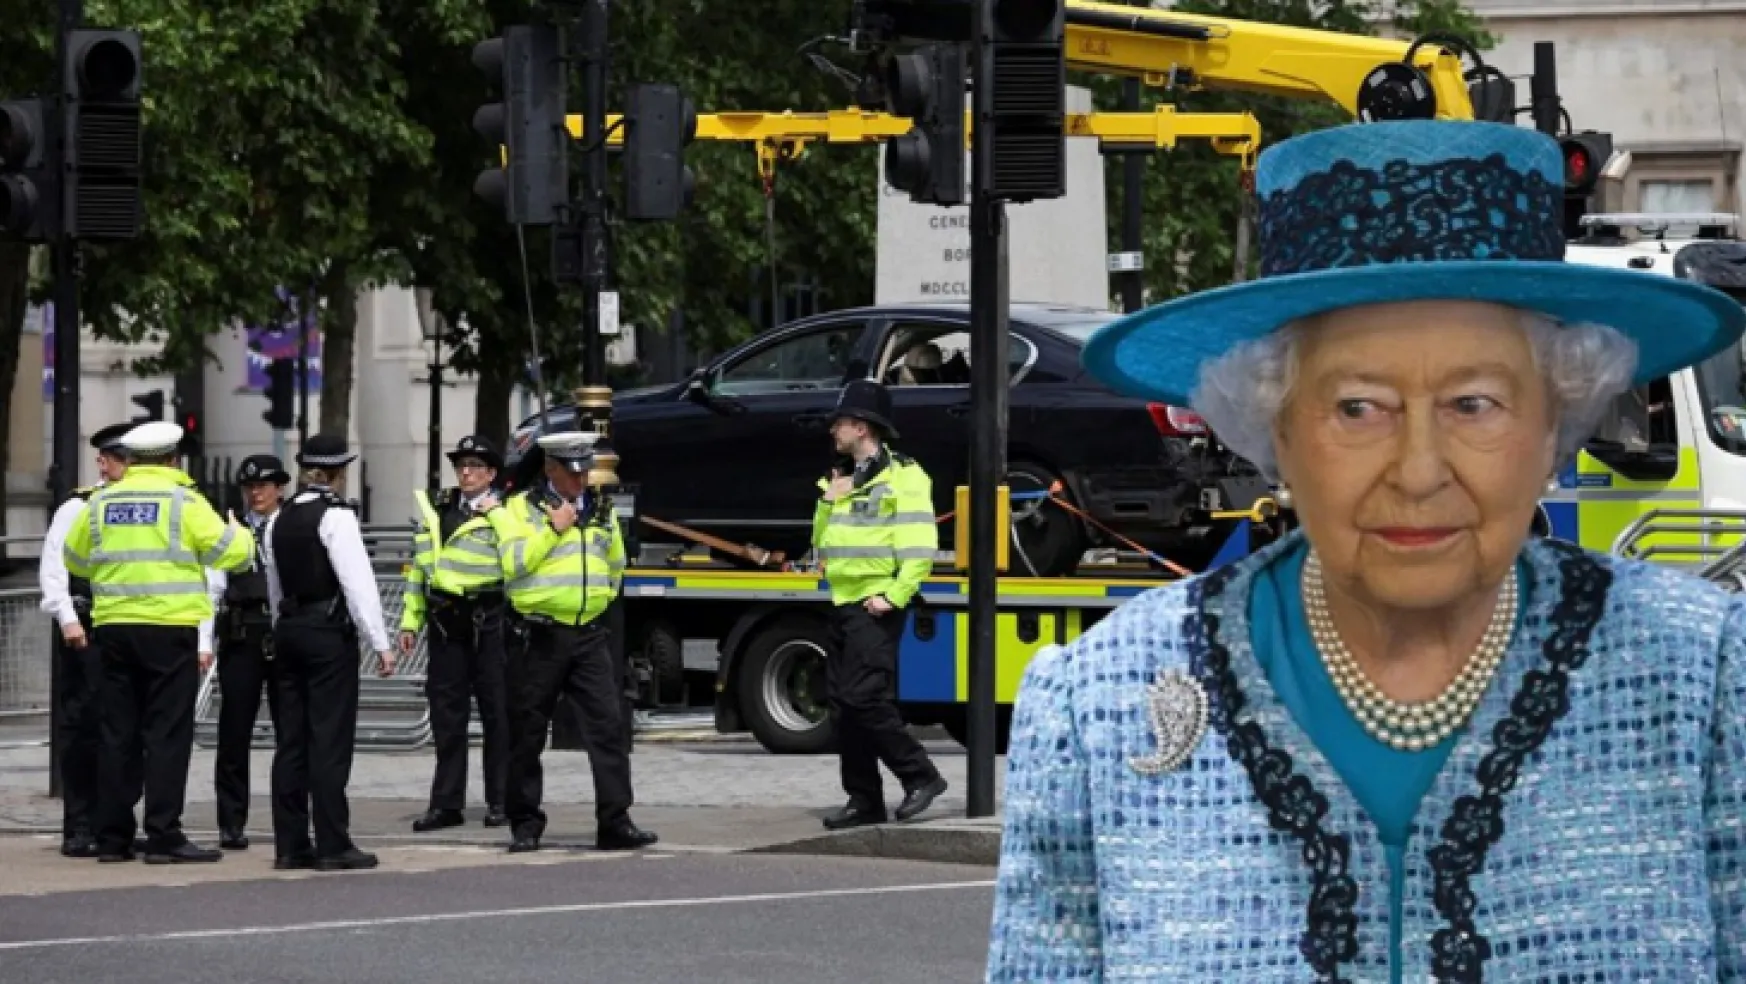 Kraliçe Elizabeth'in Platin Jübile'sinde bomba paniği